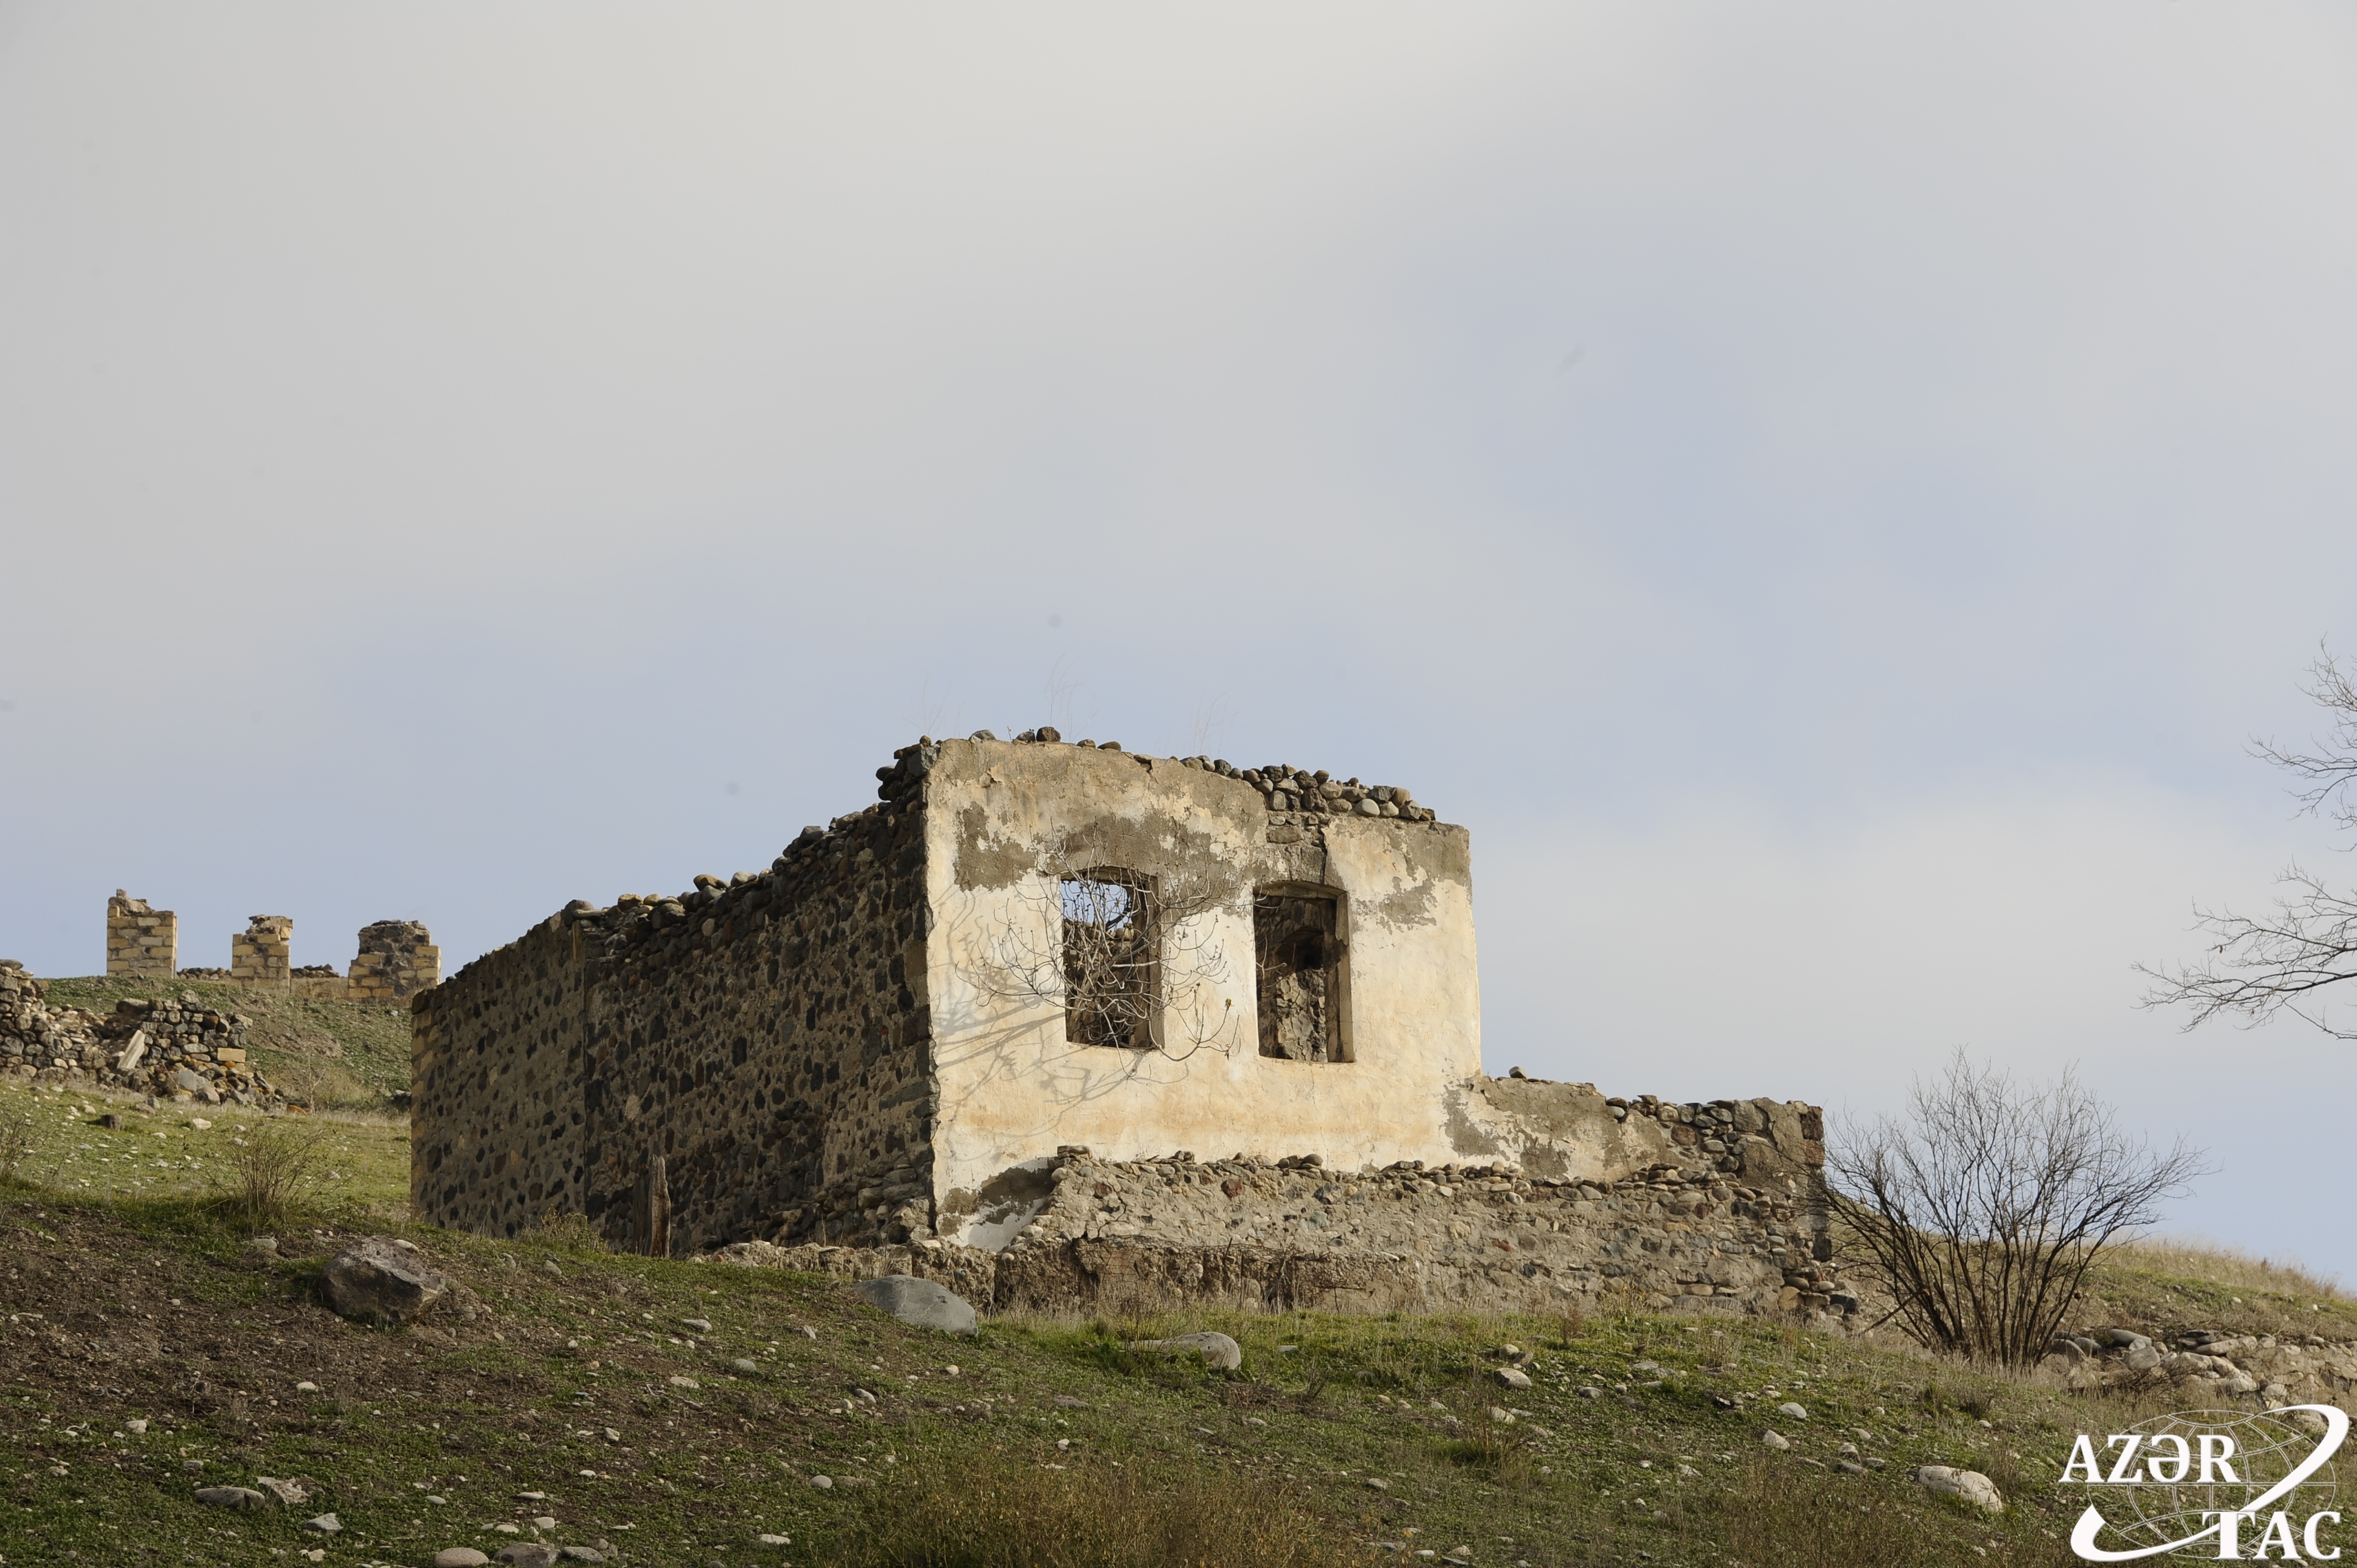 Село тех в армении